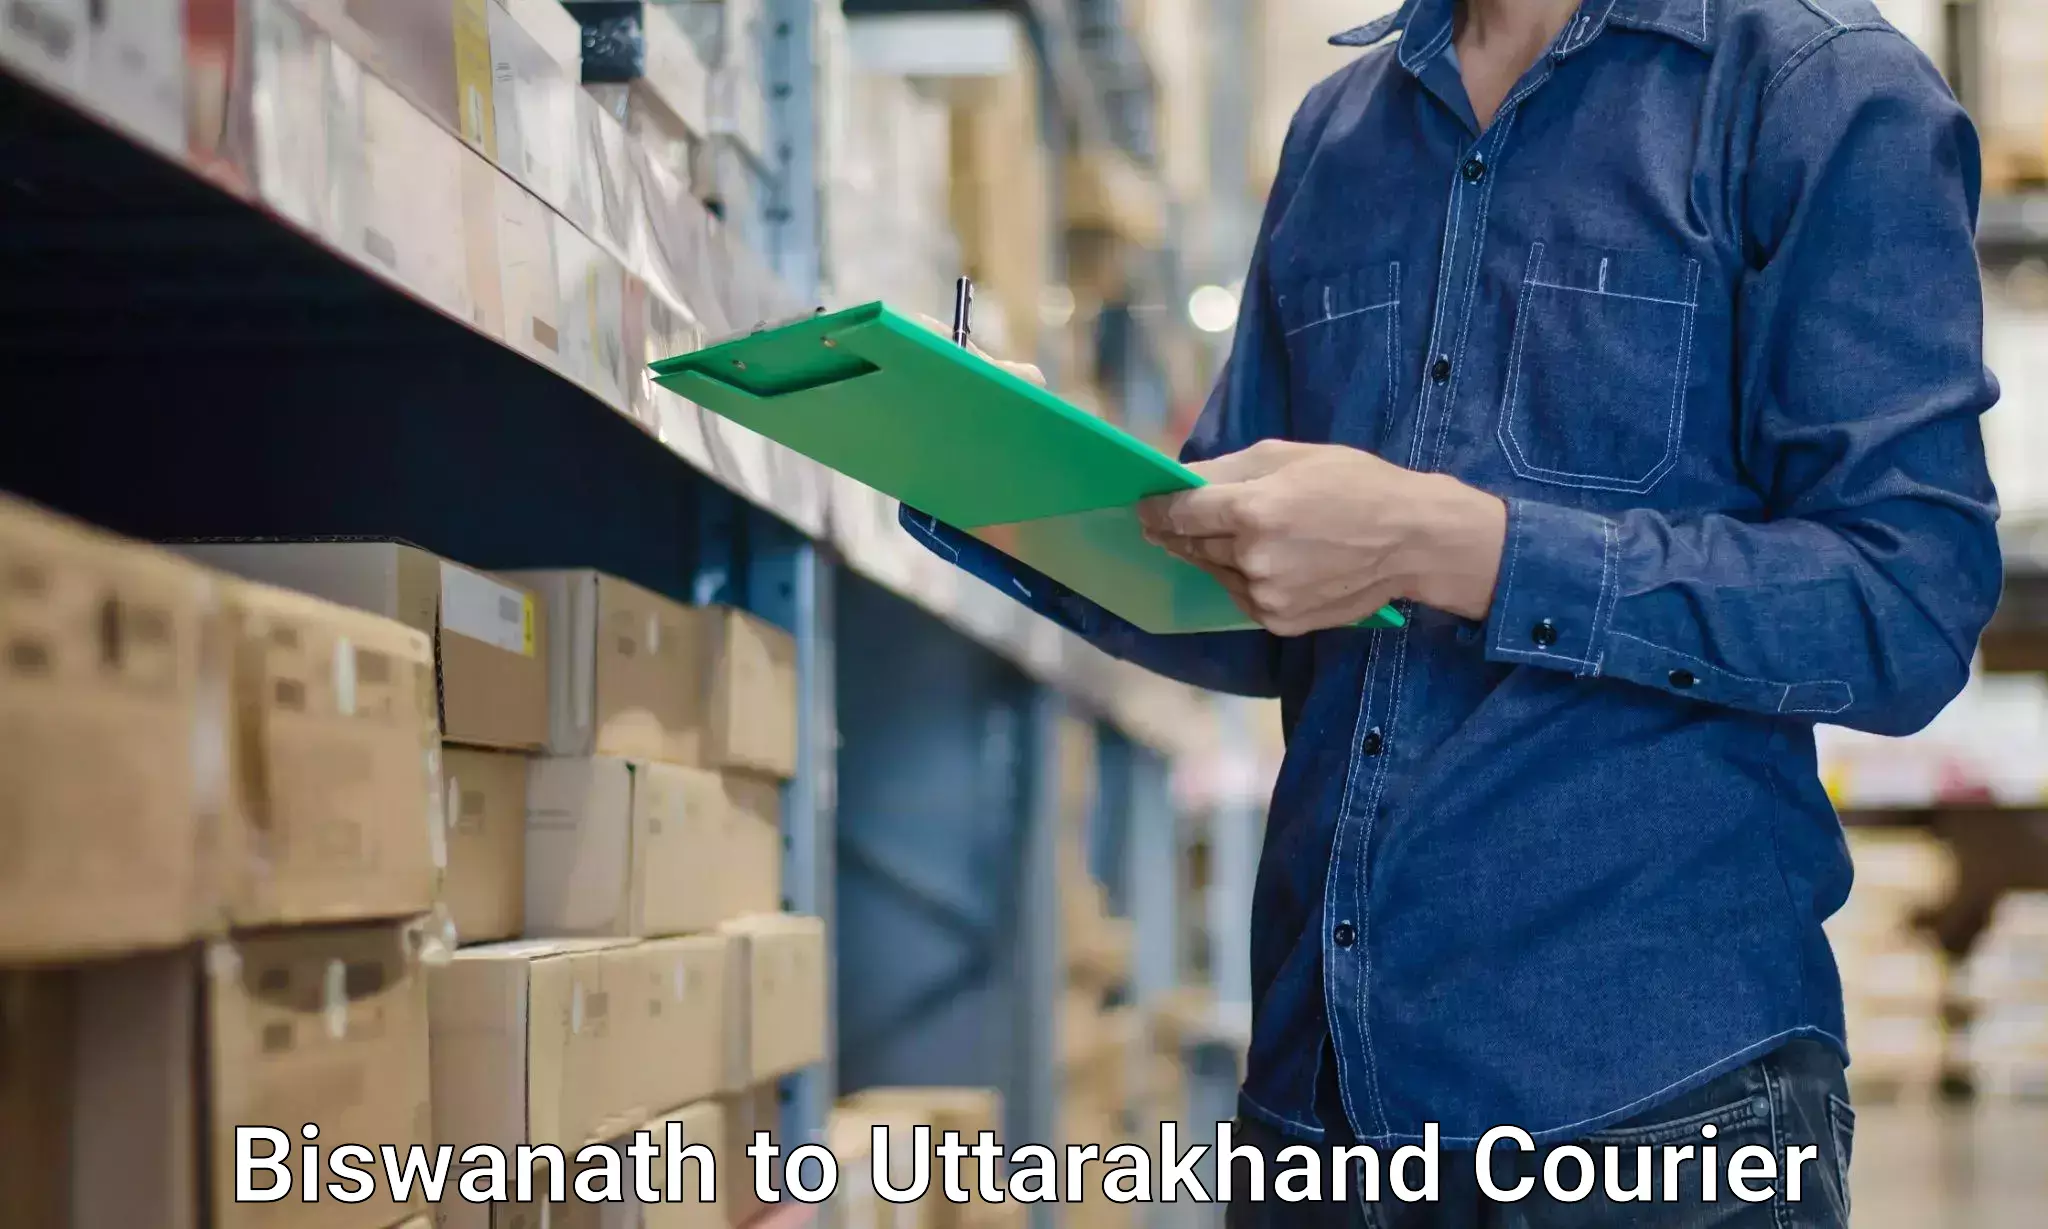 Furniture transport professionals in Biswanath to Uttarakhand